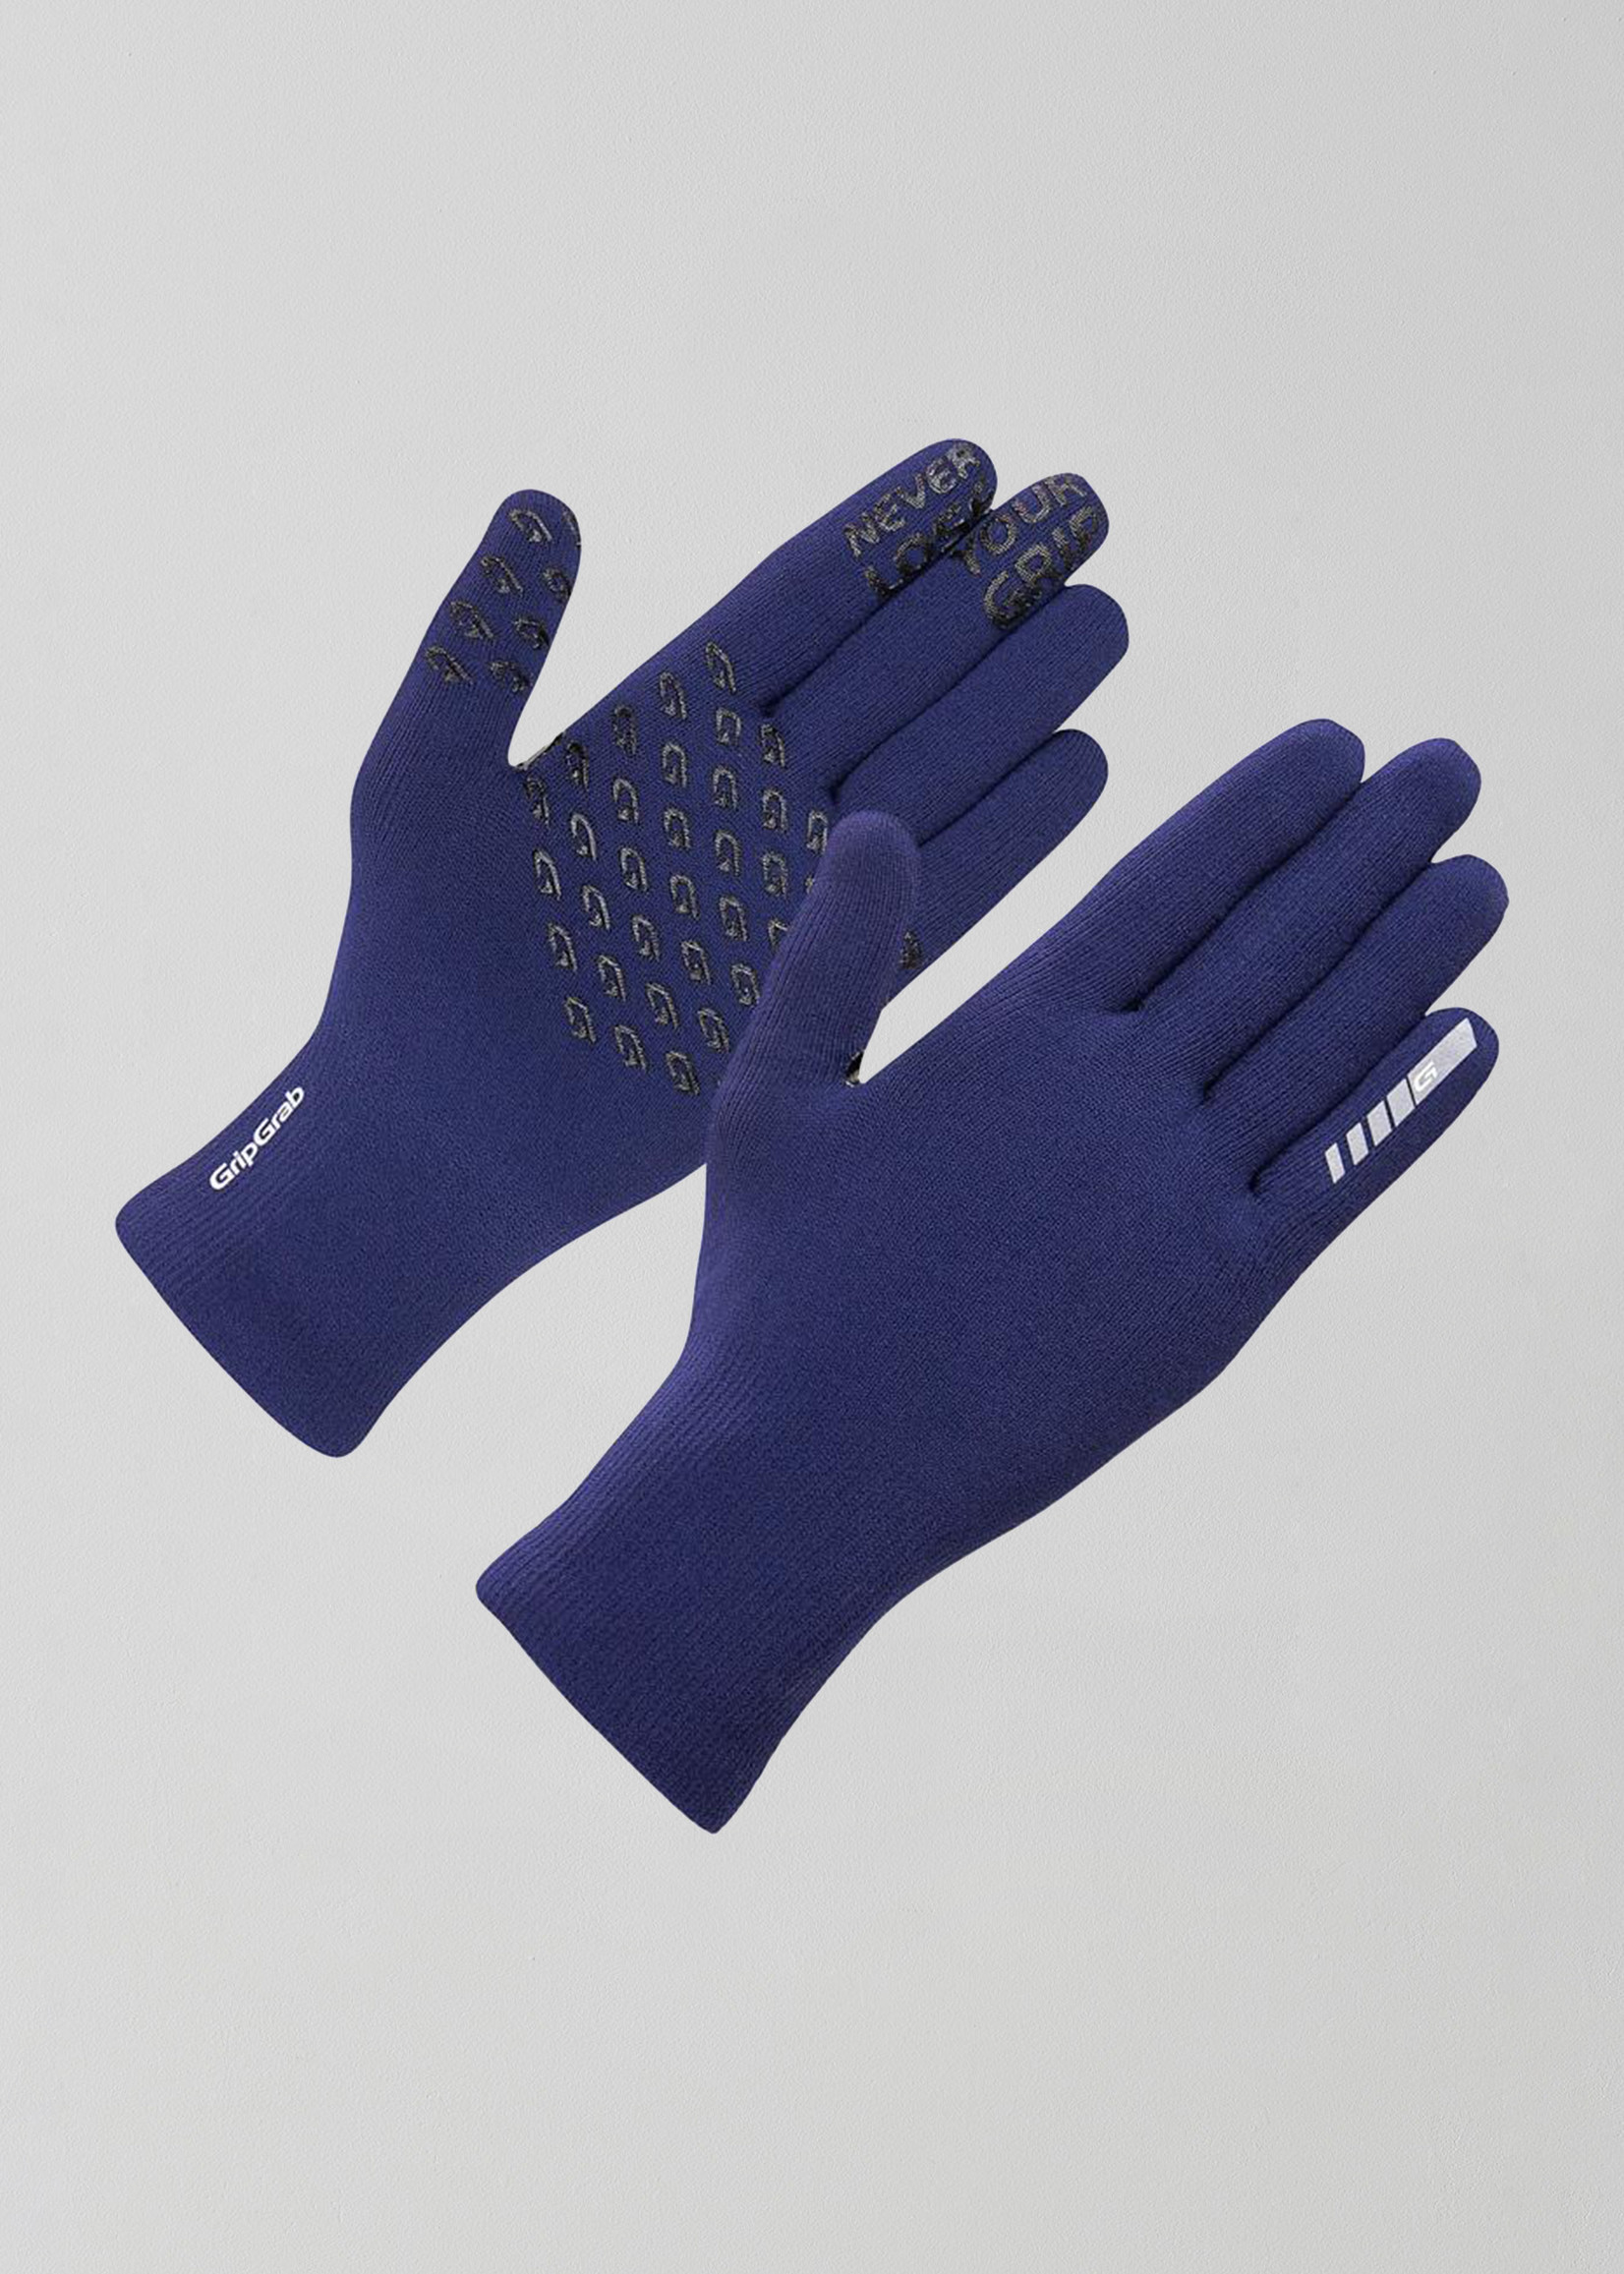 Grip Grab Waterproof Knitted - Thermal Glove